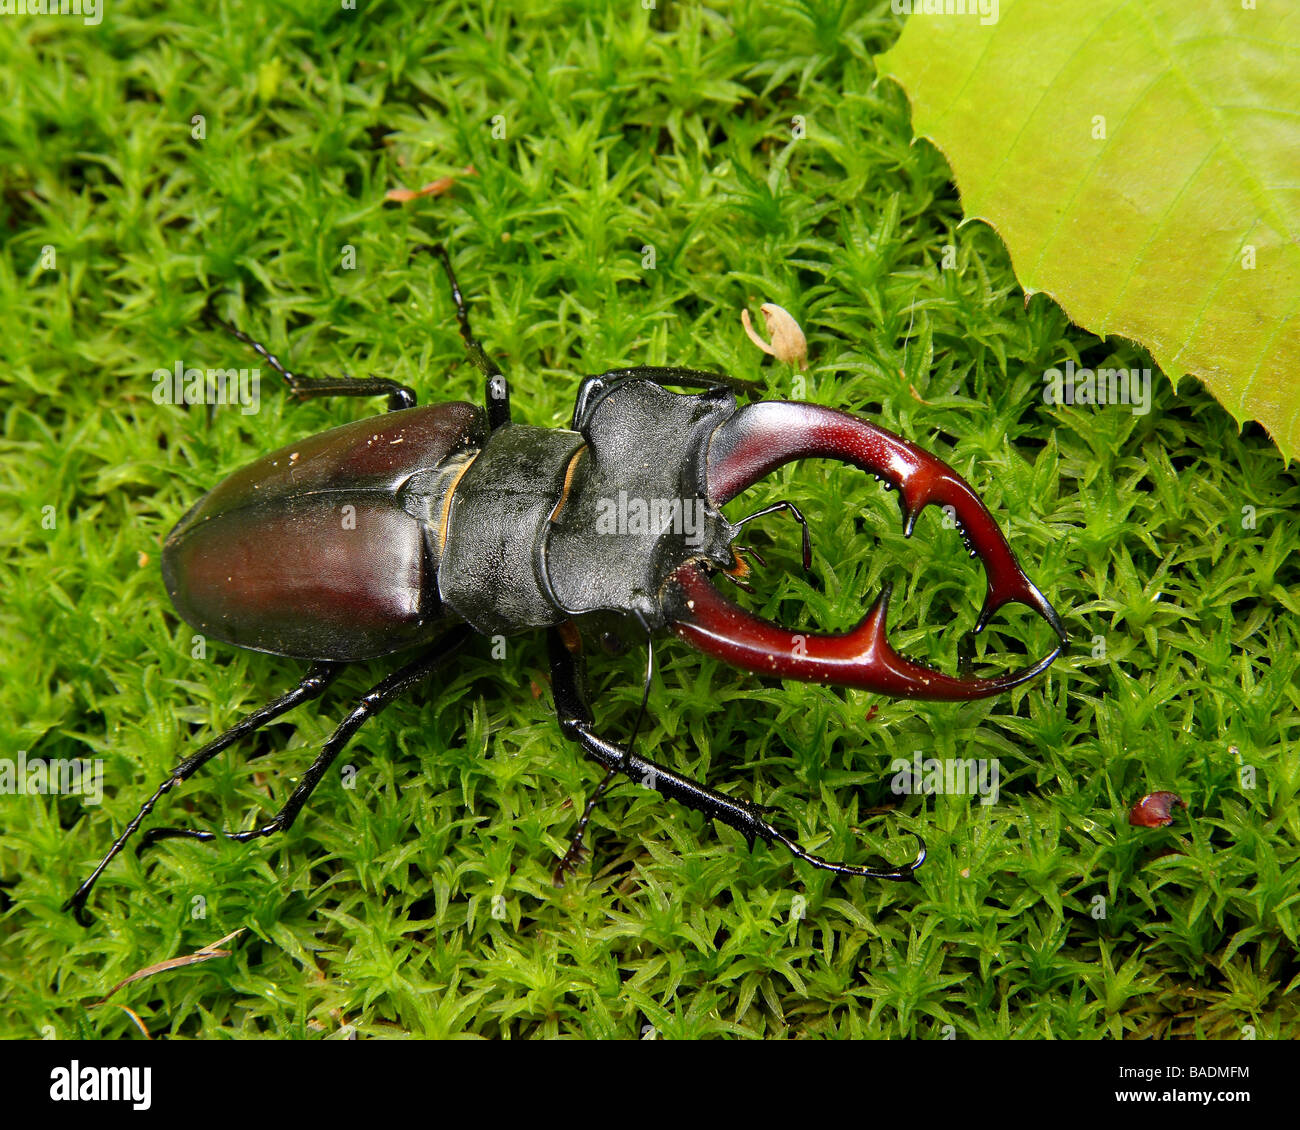 Un homme Stag beetle sur mousse Limousin France Banque D'Images